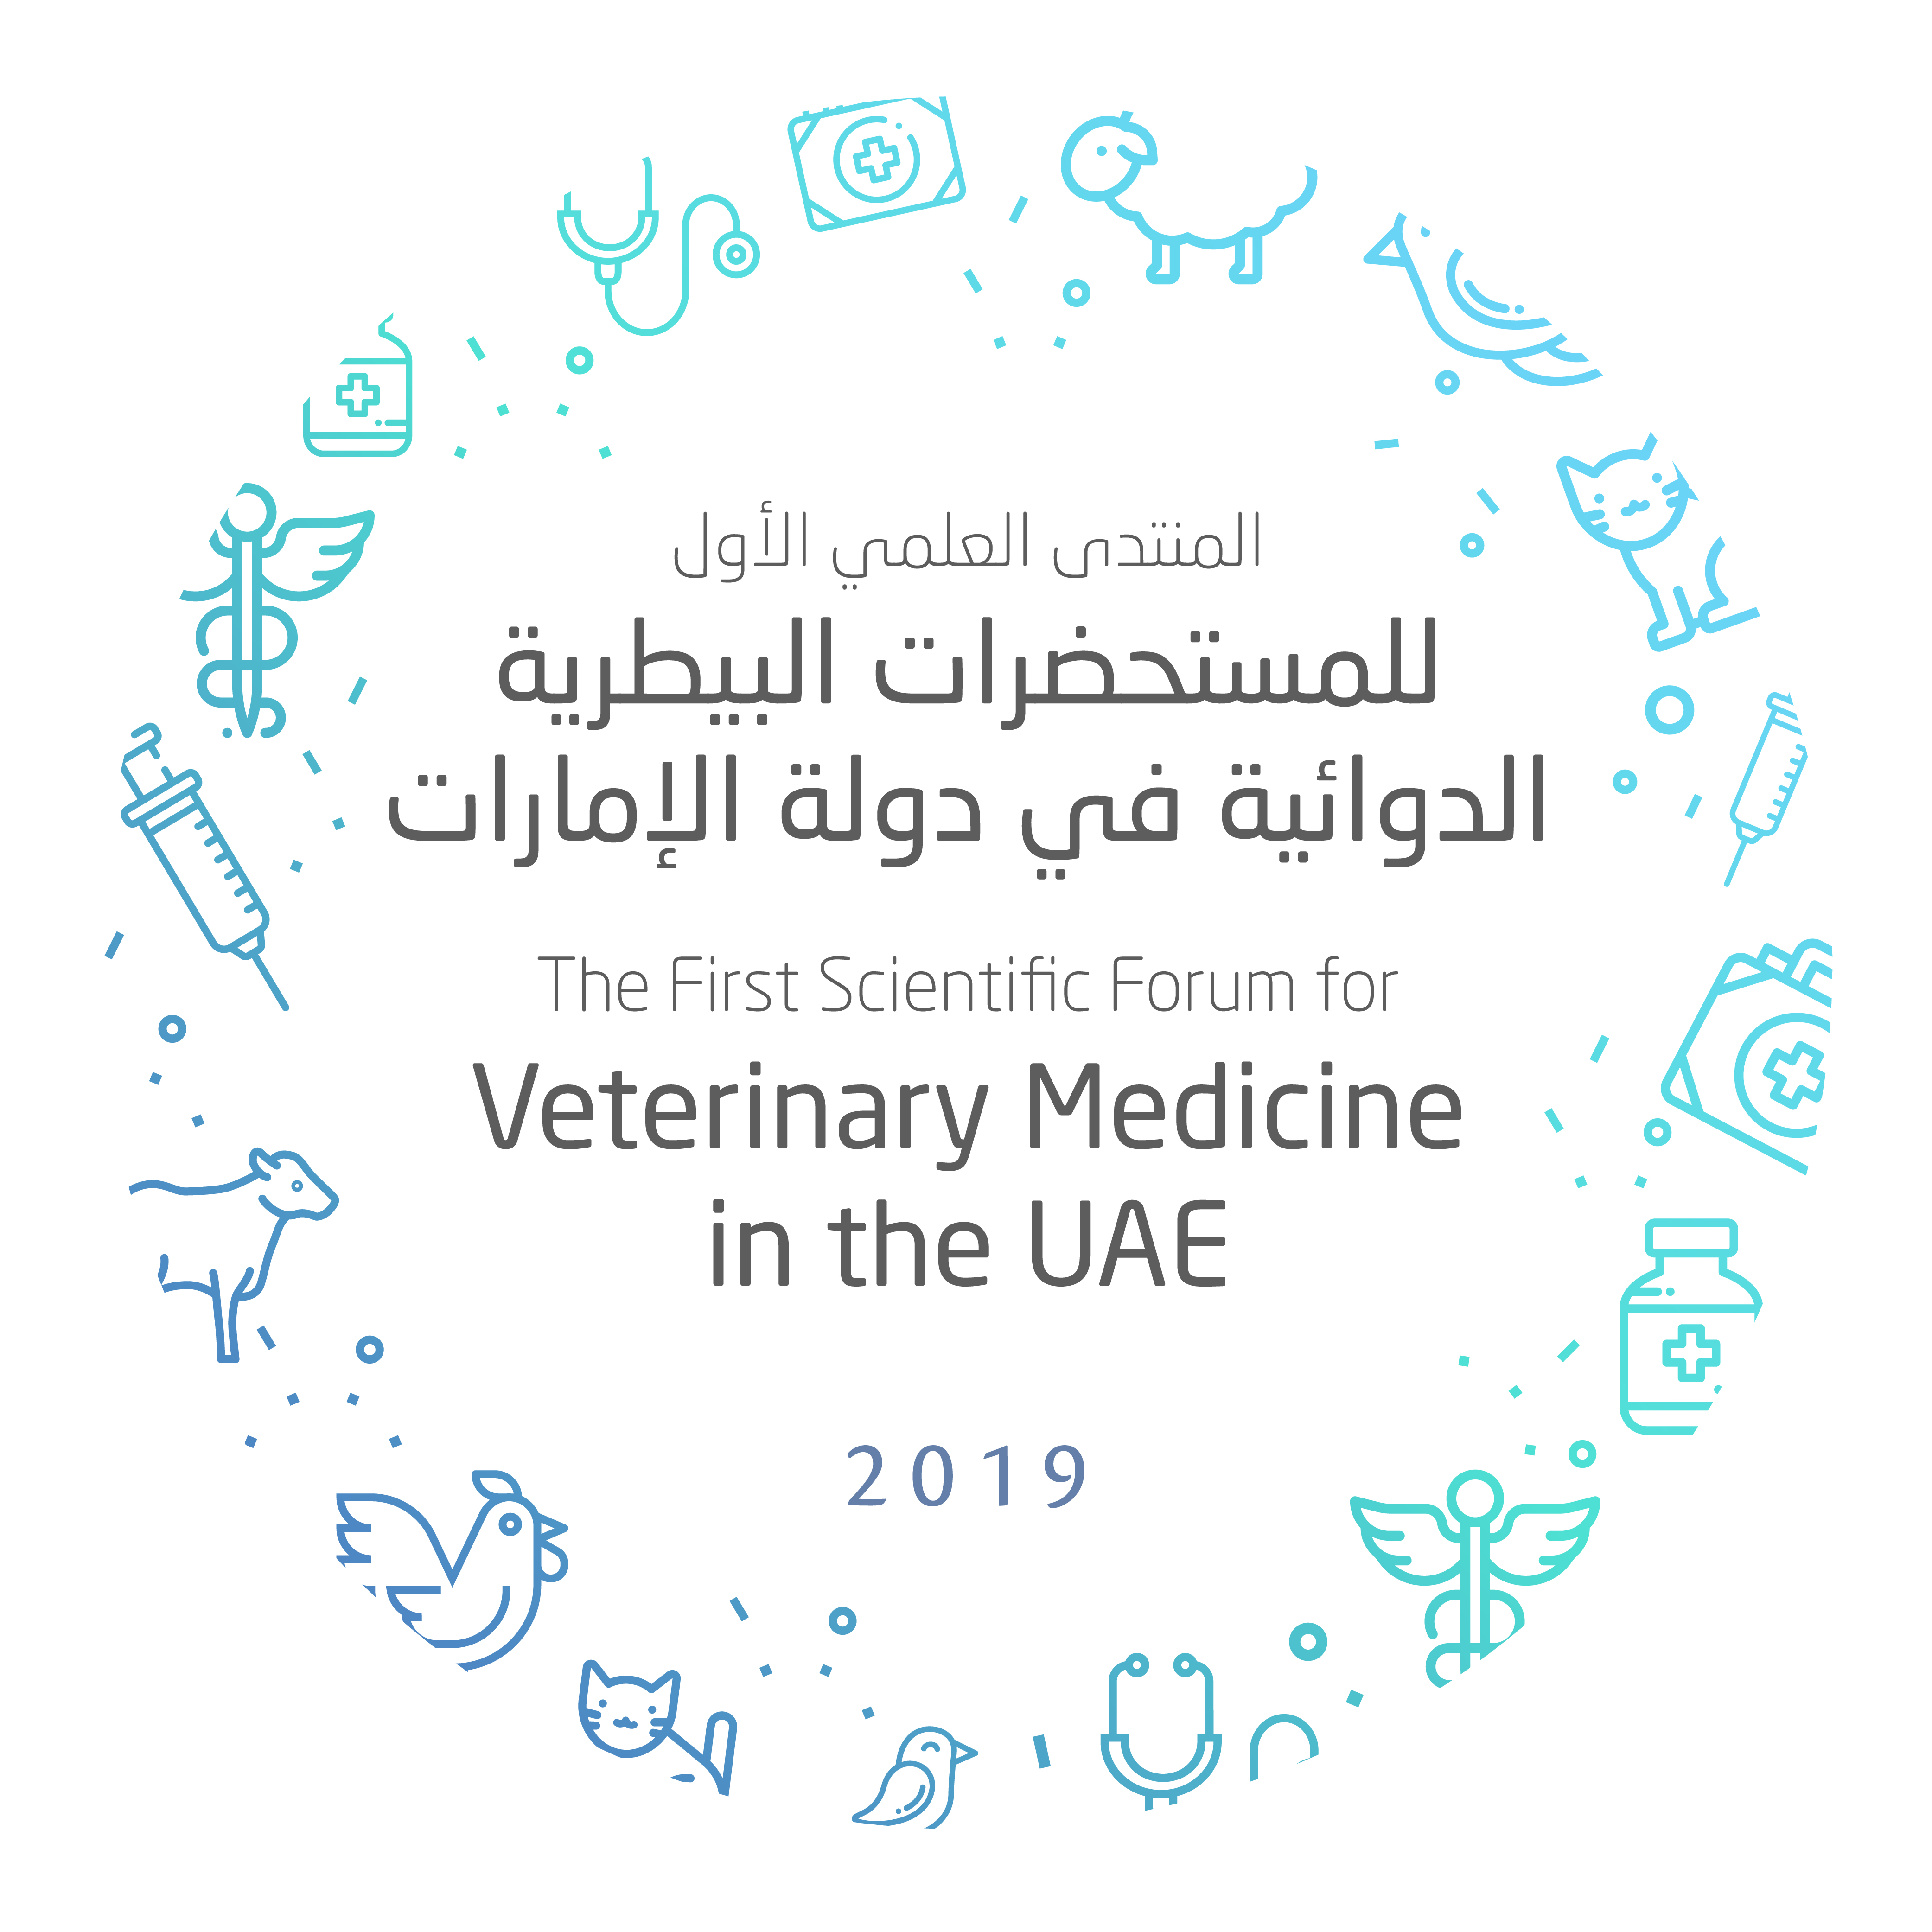 المنتدى العلمي الأول للمستحضرات البيطرية الدوائية في دولة الإمارات